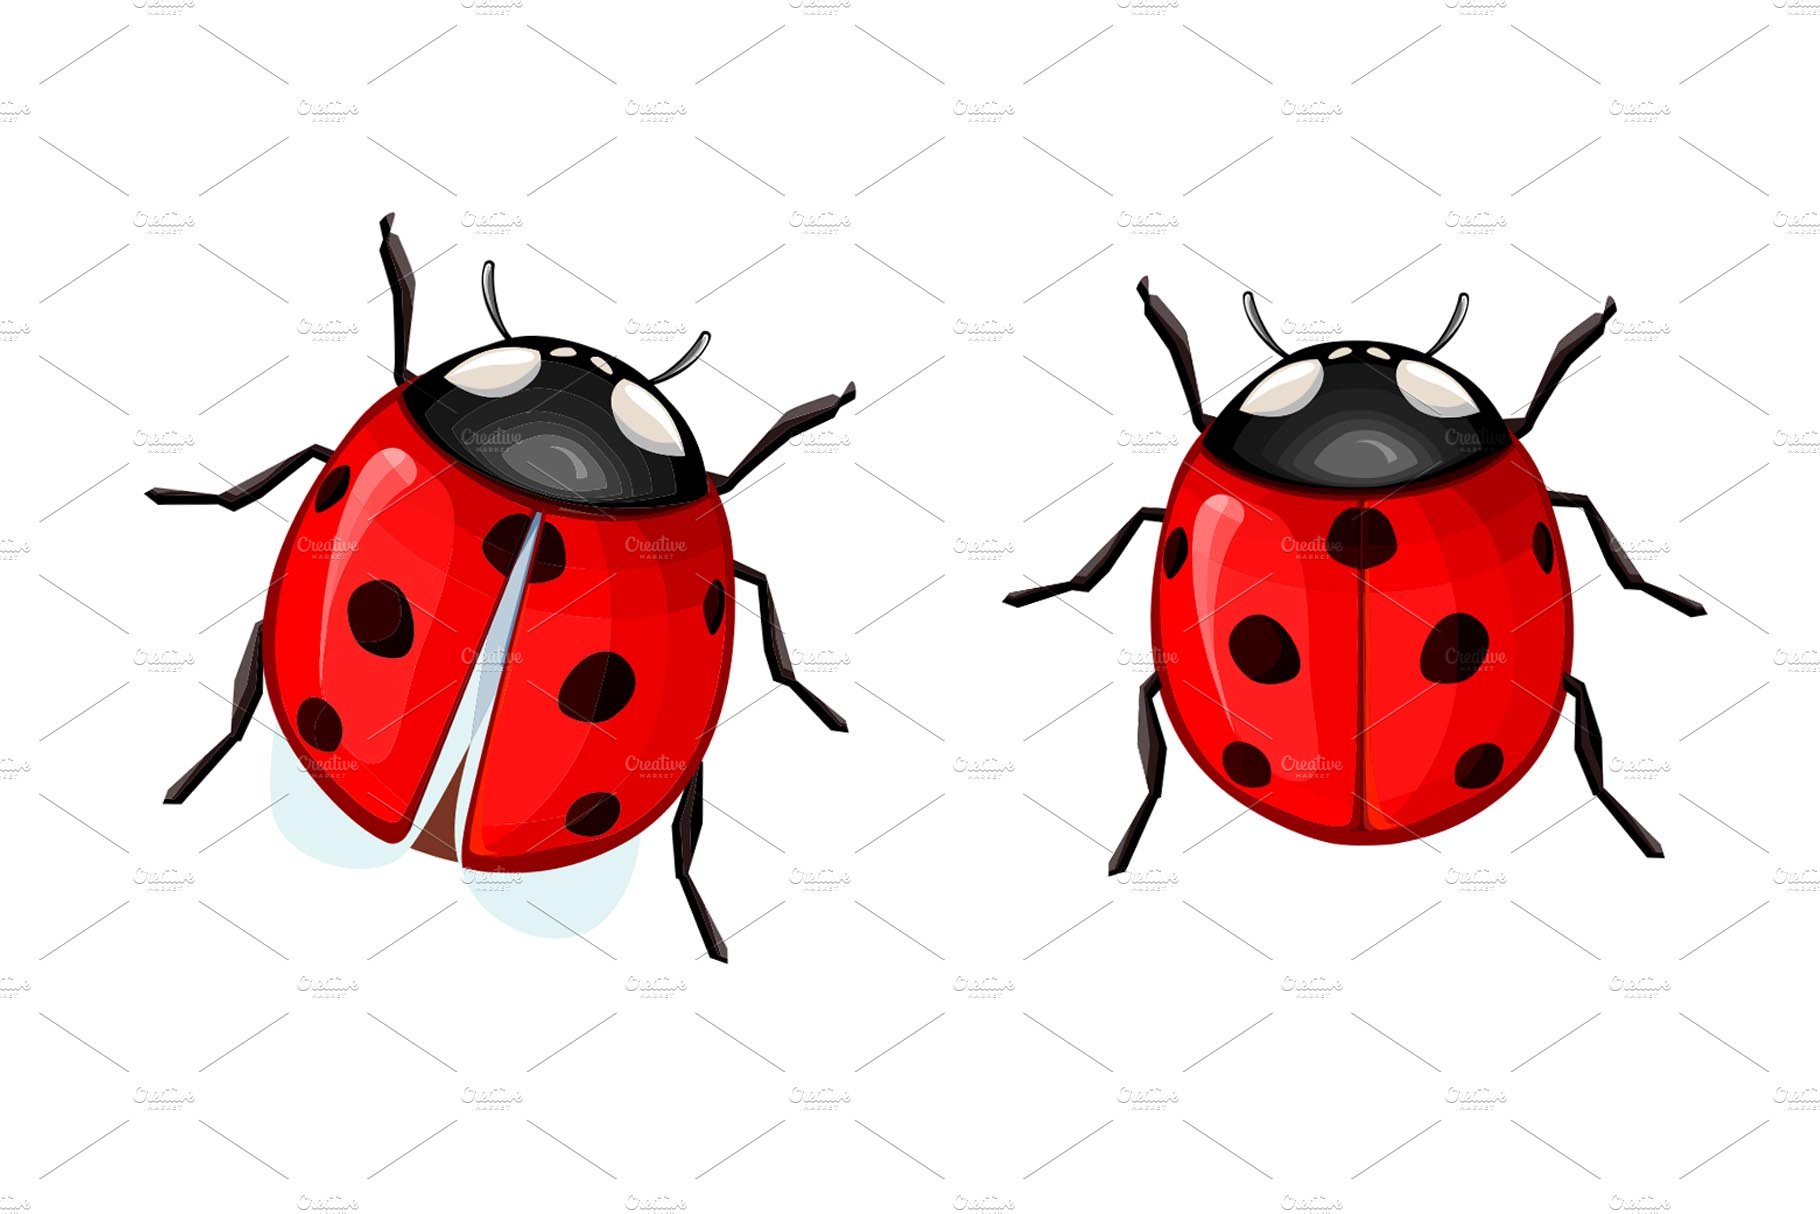 Ladybug preview image.